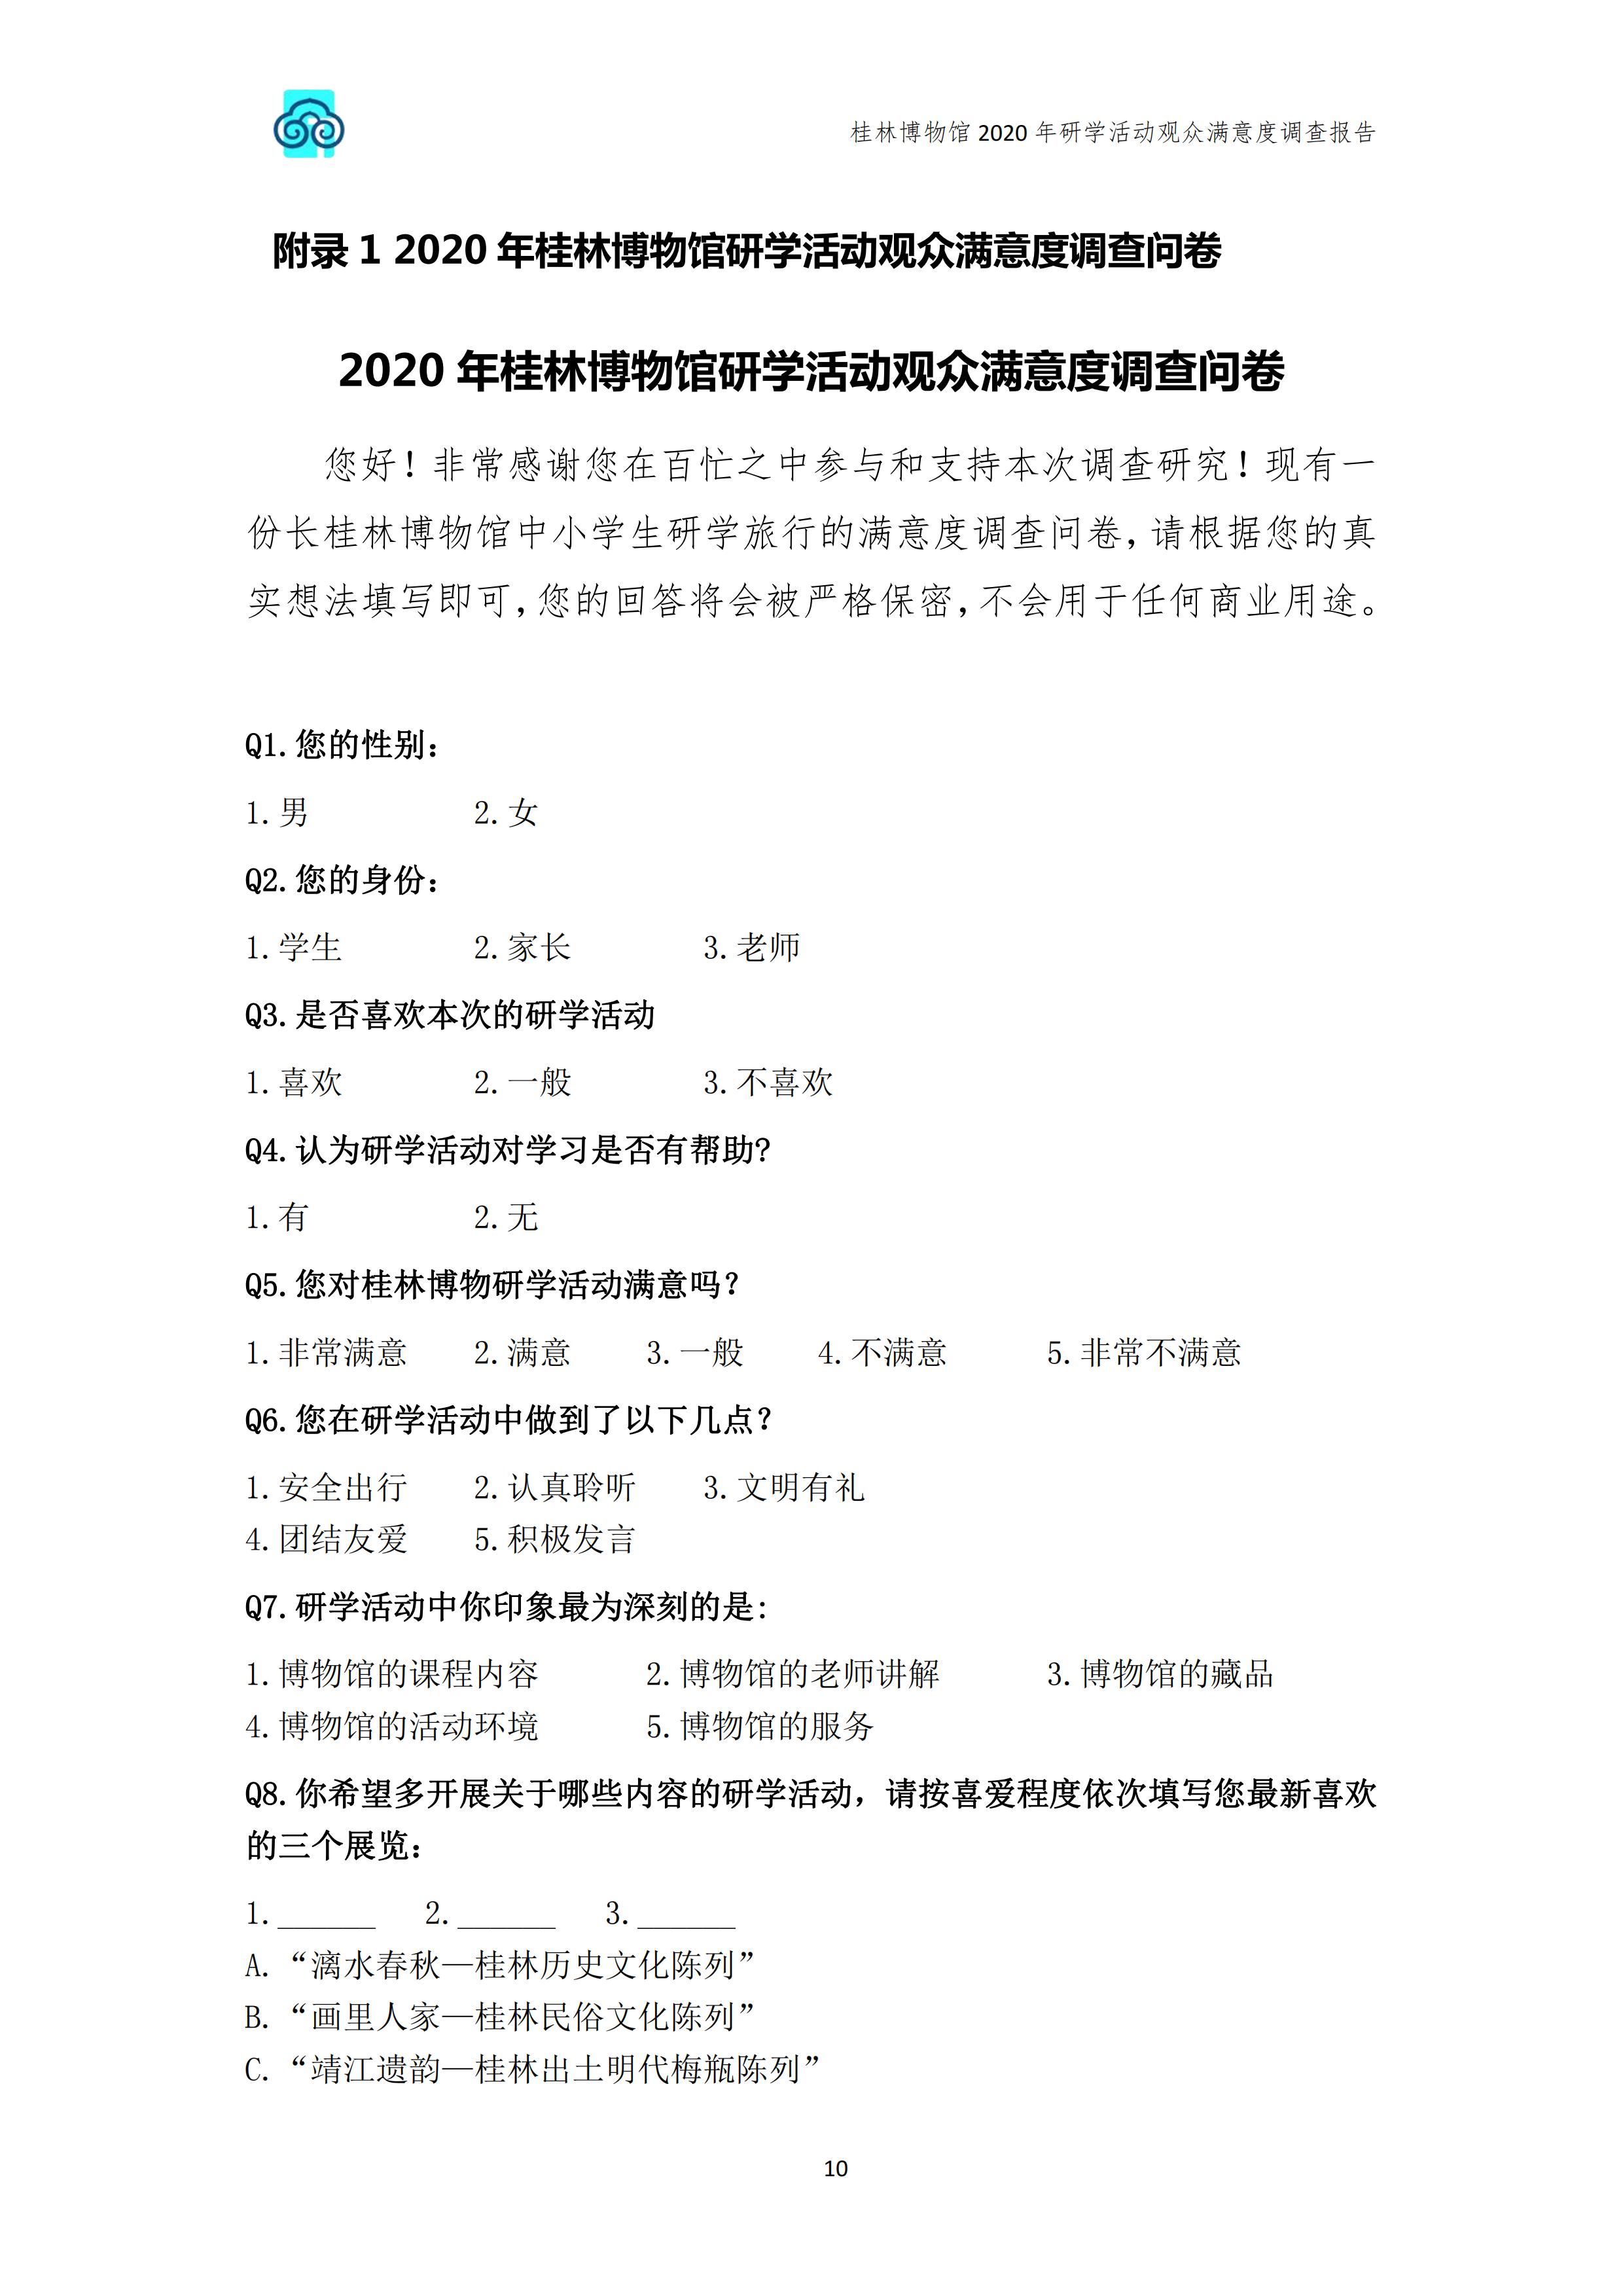 桂林博物馆2020年研学活动观众满意度调查报告_v3_11.jpg